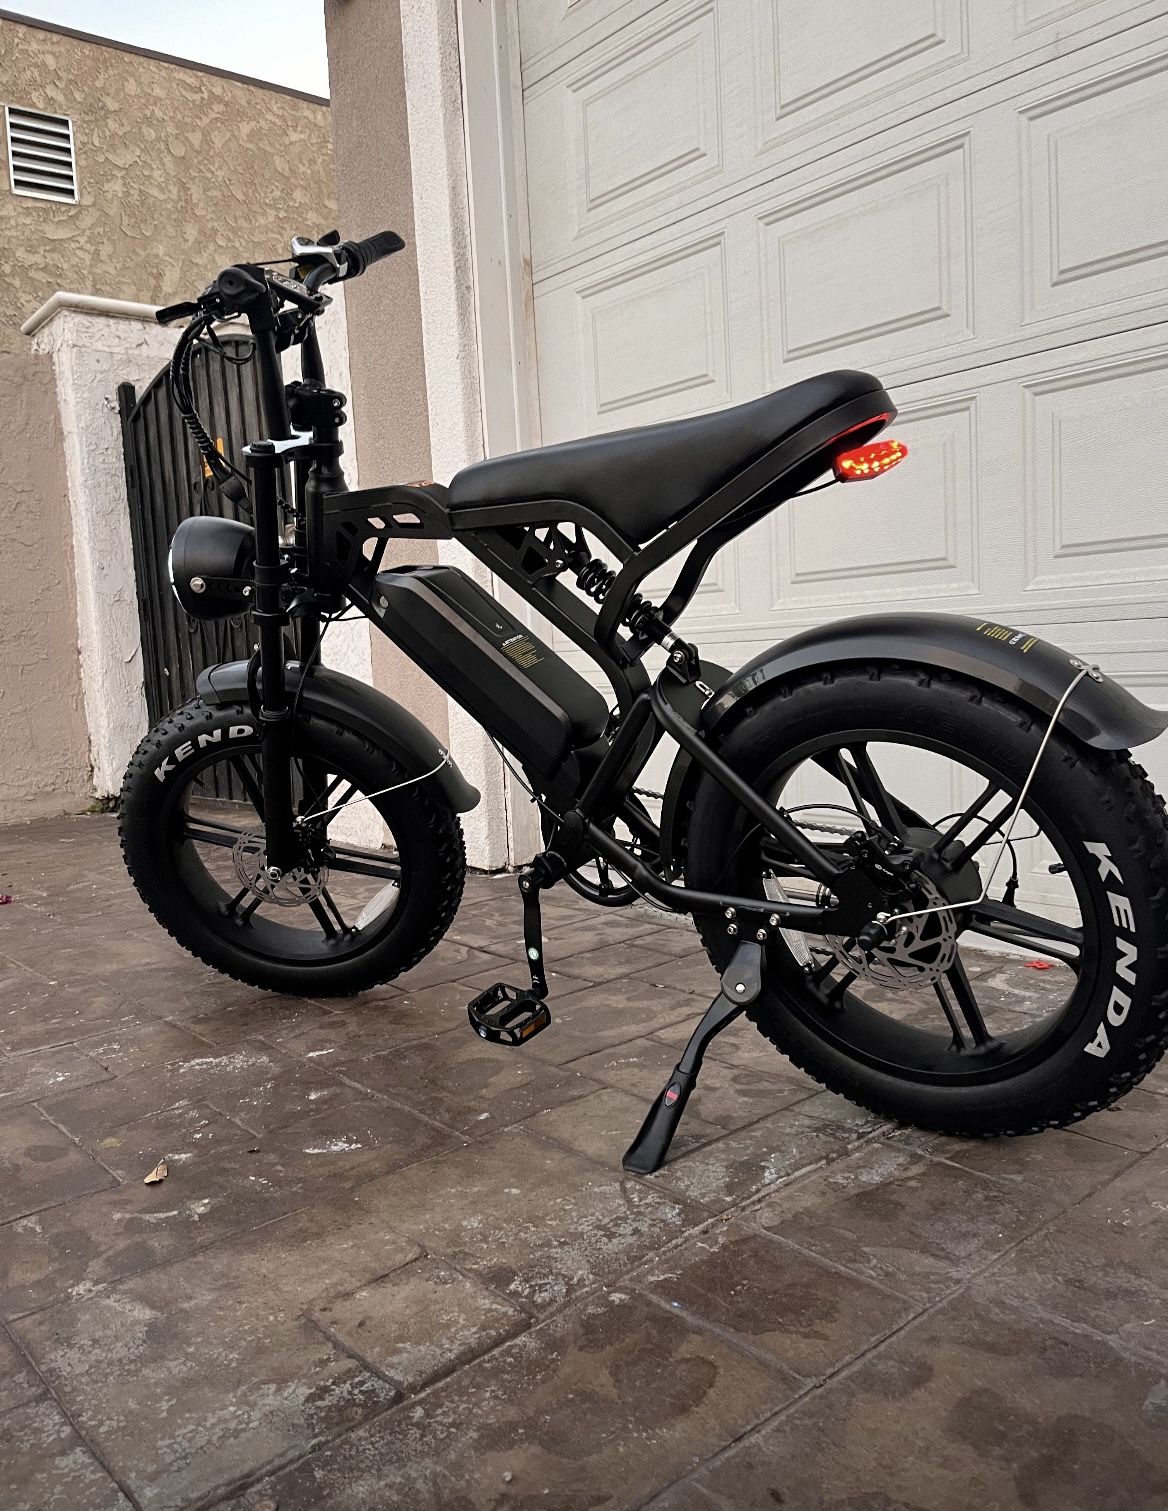 New Electric Bike! 1000w, 48v, 15ah Battery, 20in Fat Tires, 30mph, Twist Throttle